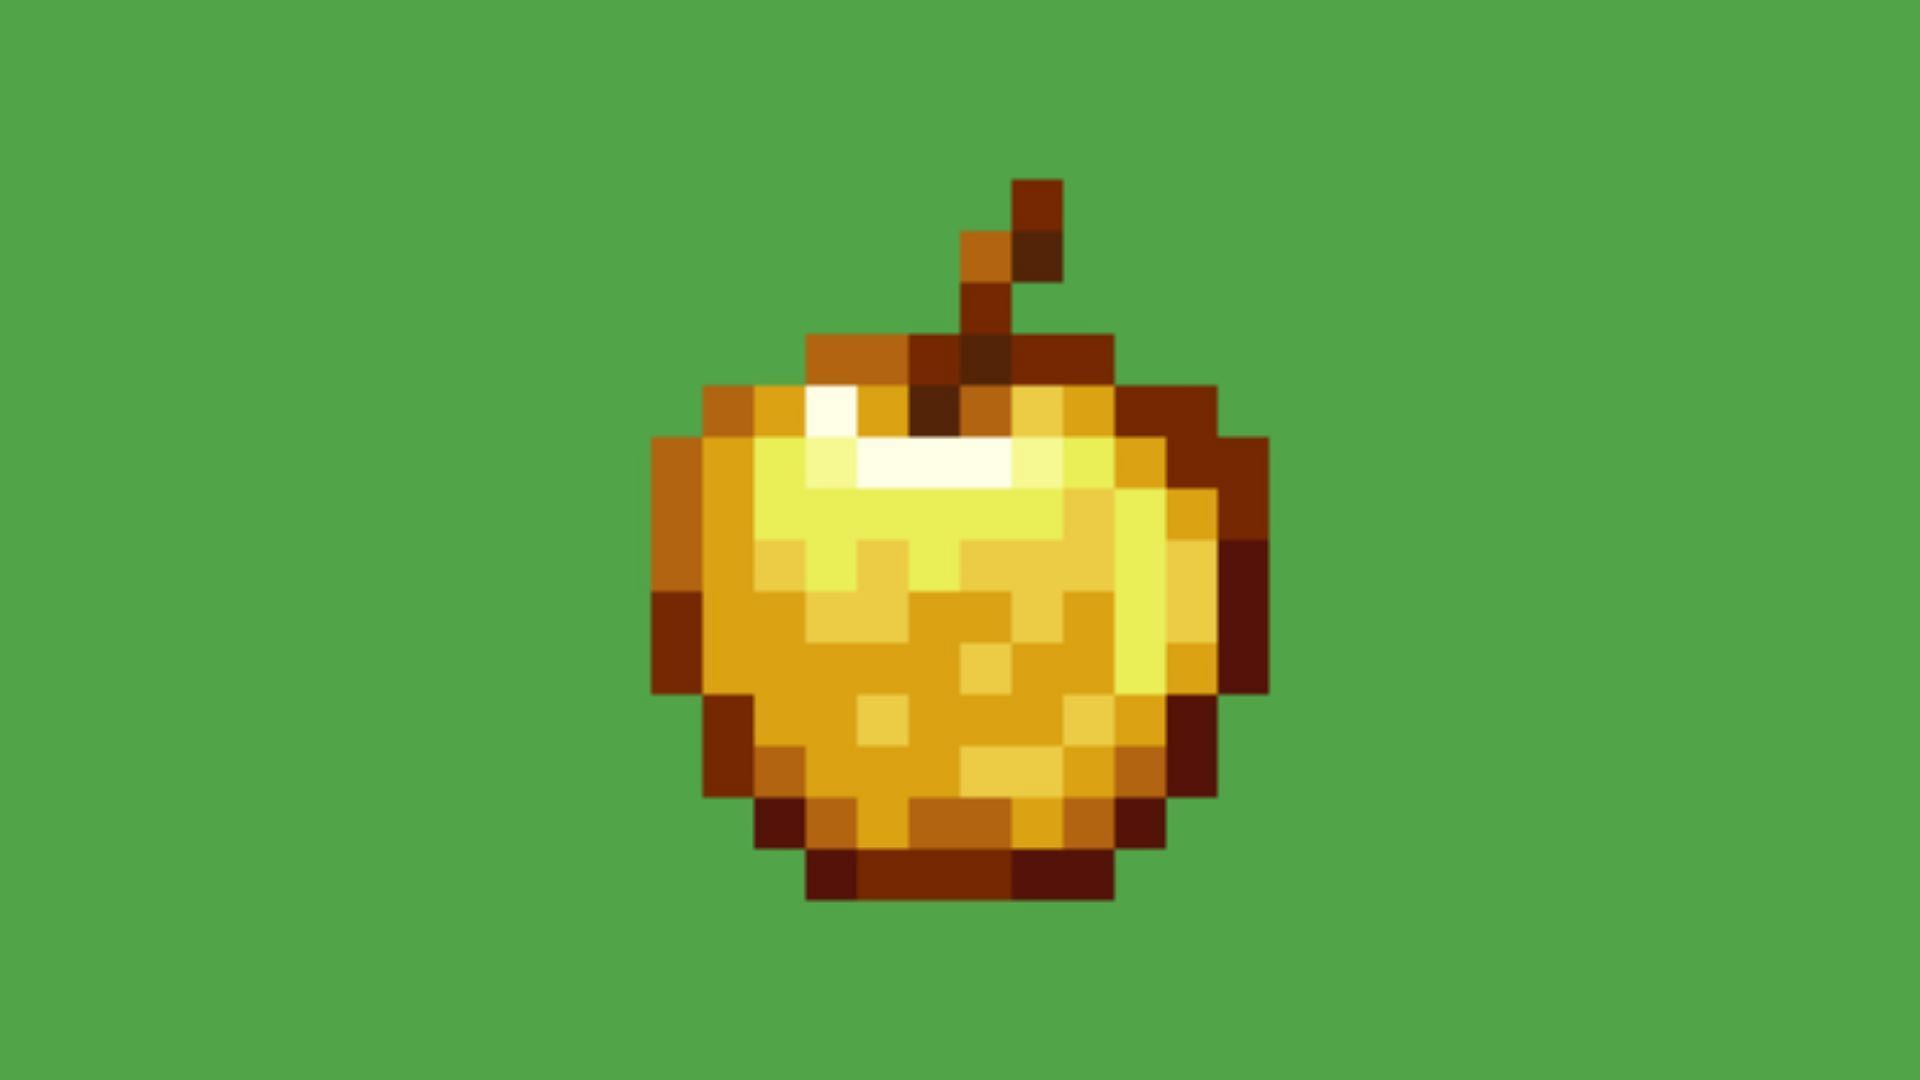 Golden apple in Minecraft. (Image via Mojang Studios)